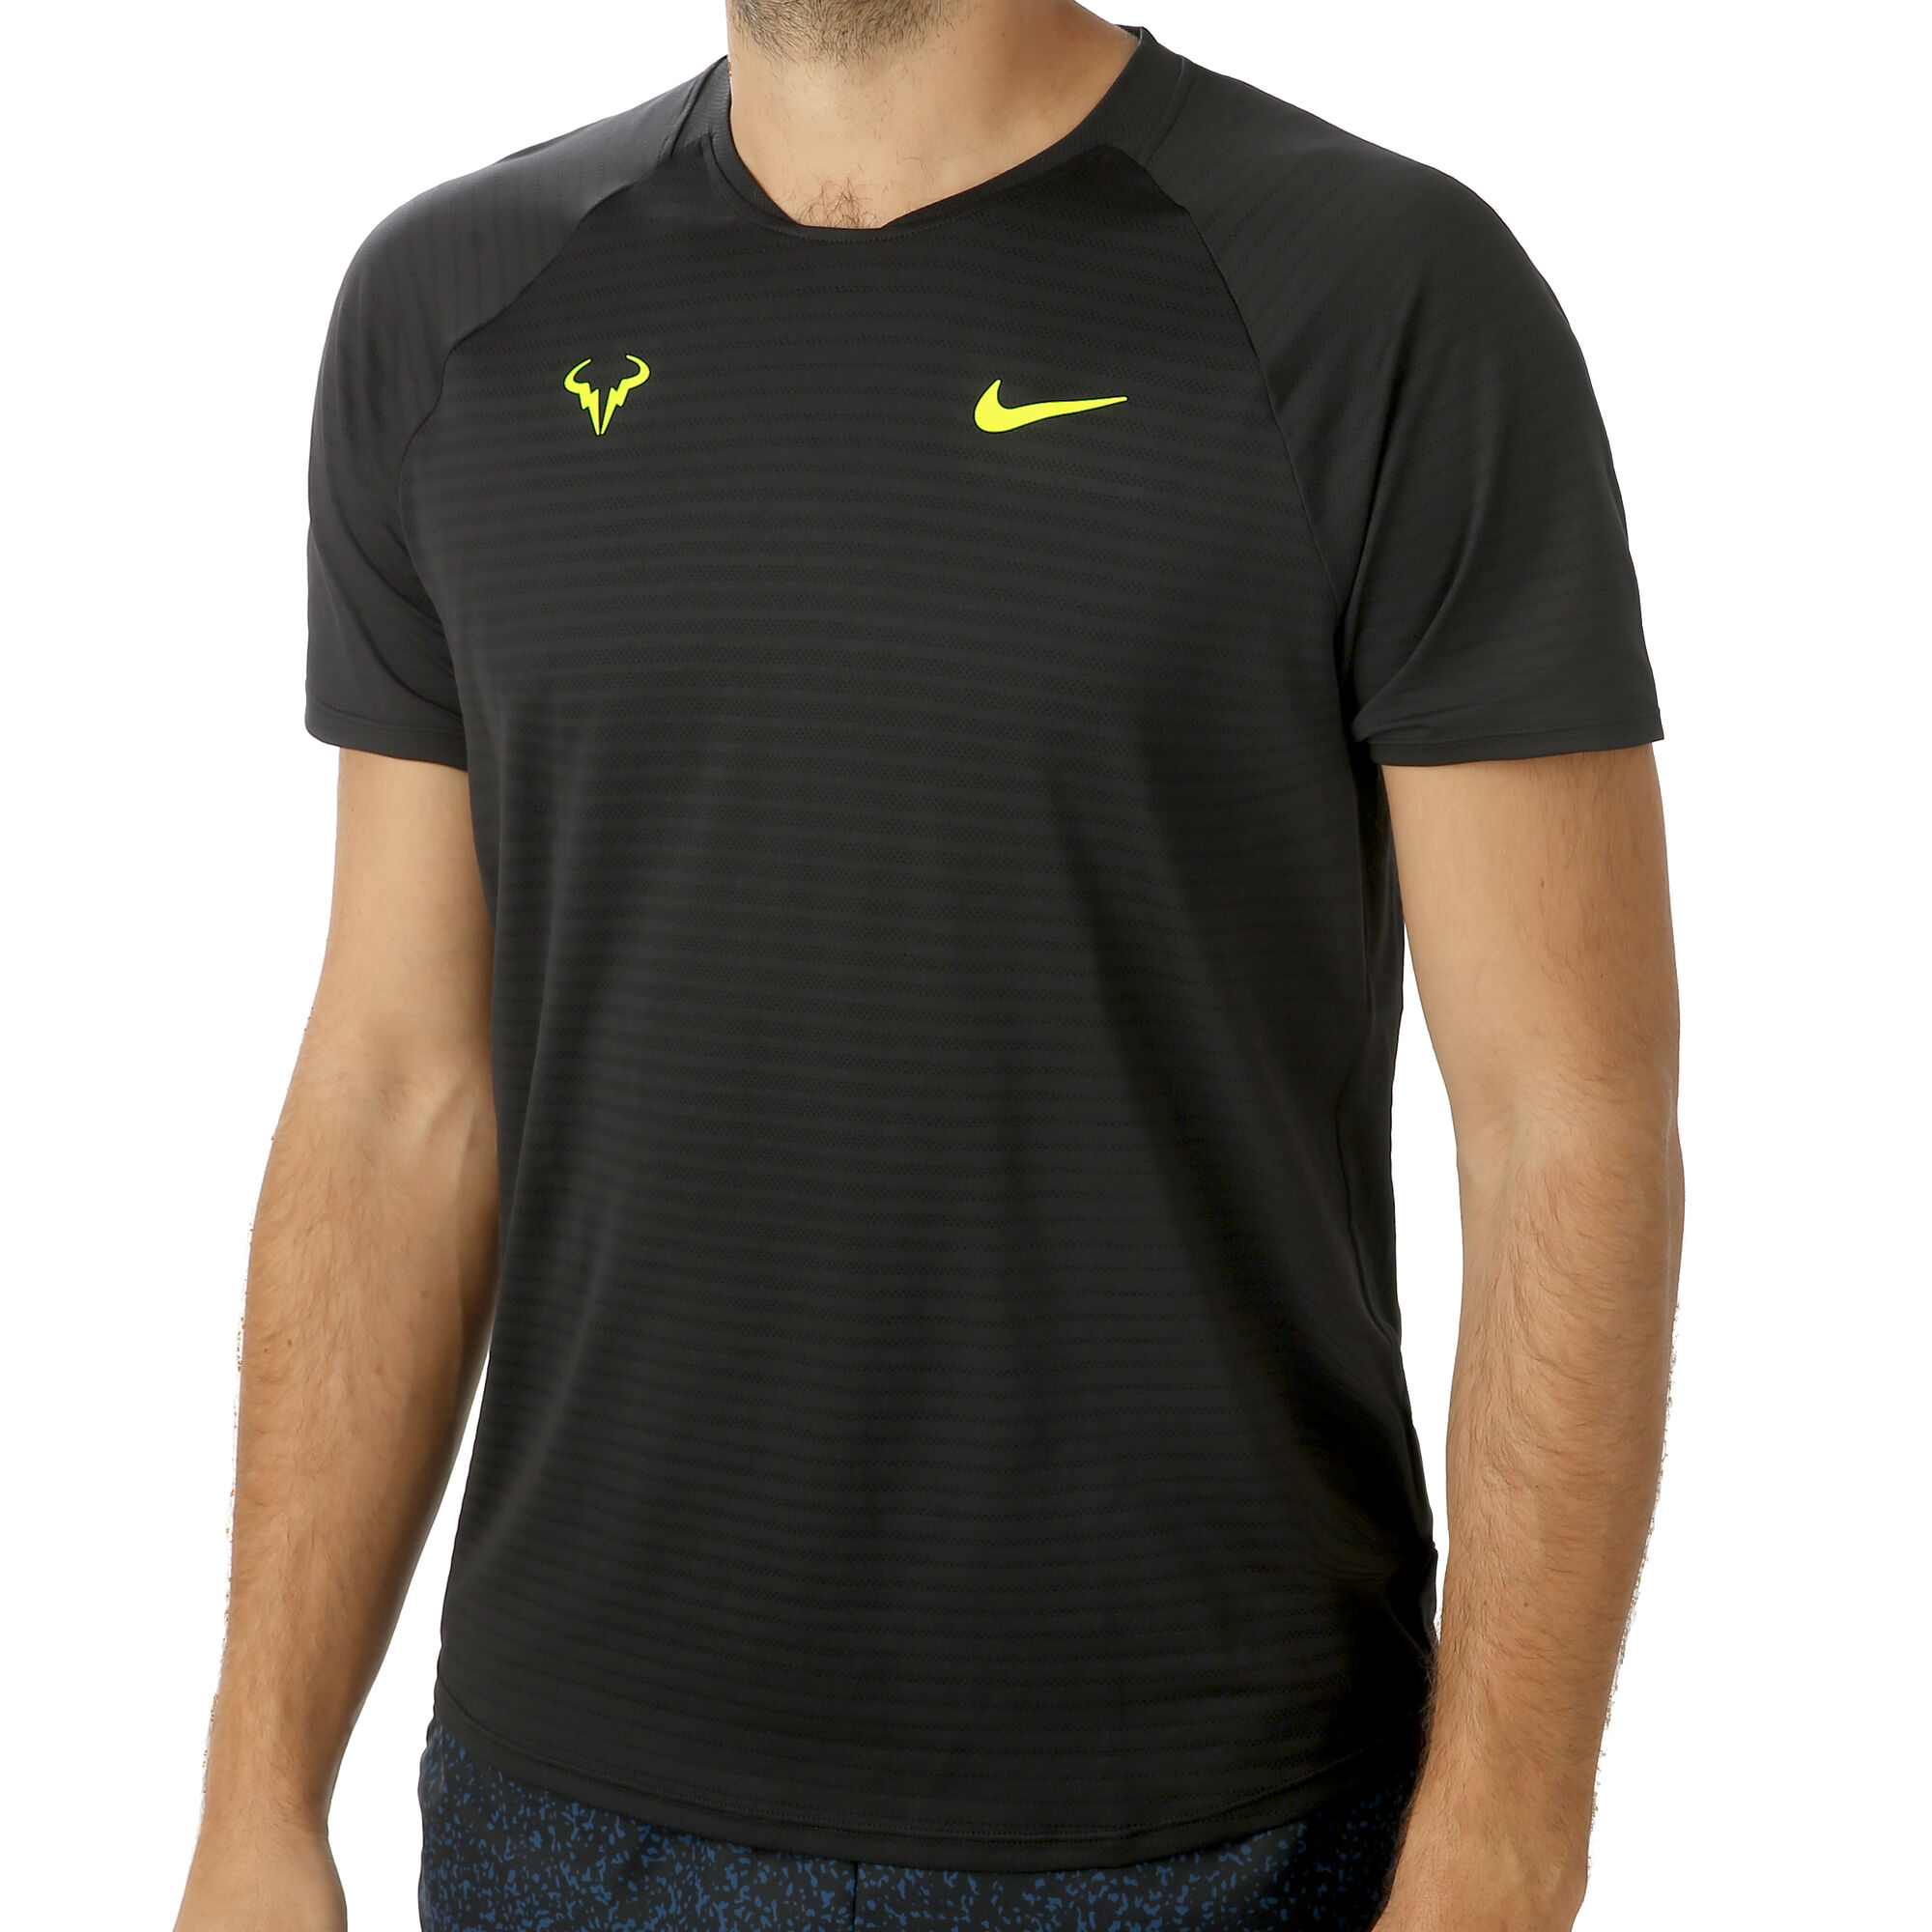 Tamano relativo probabilidad Especificidad Nike Rafael Nadal Court AeroReact Slam Camiseta De Manga Corta Hombres -  Negro, Amarillo Neón compra online | Tennis-Point